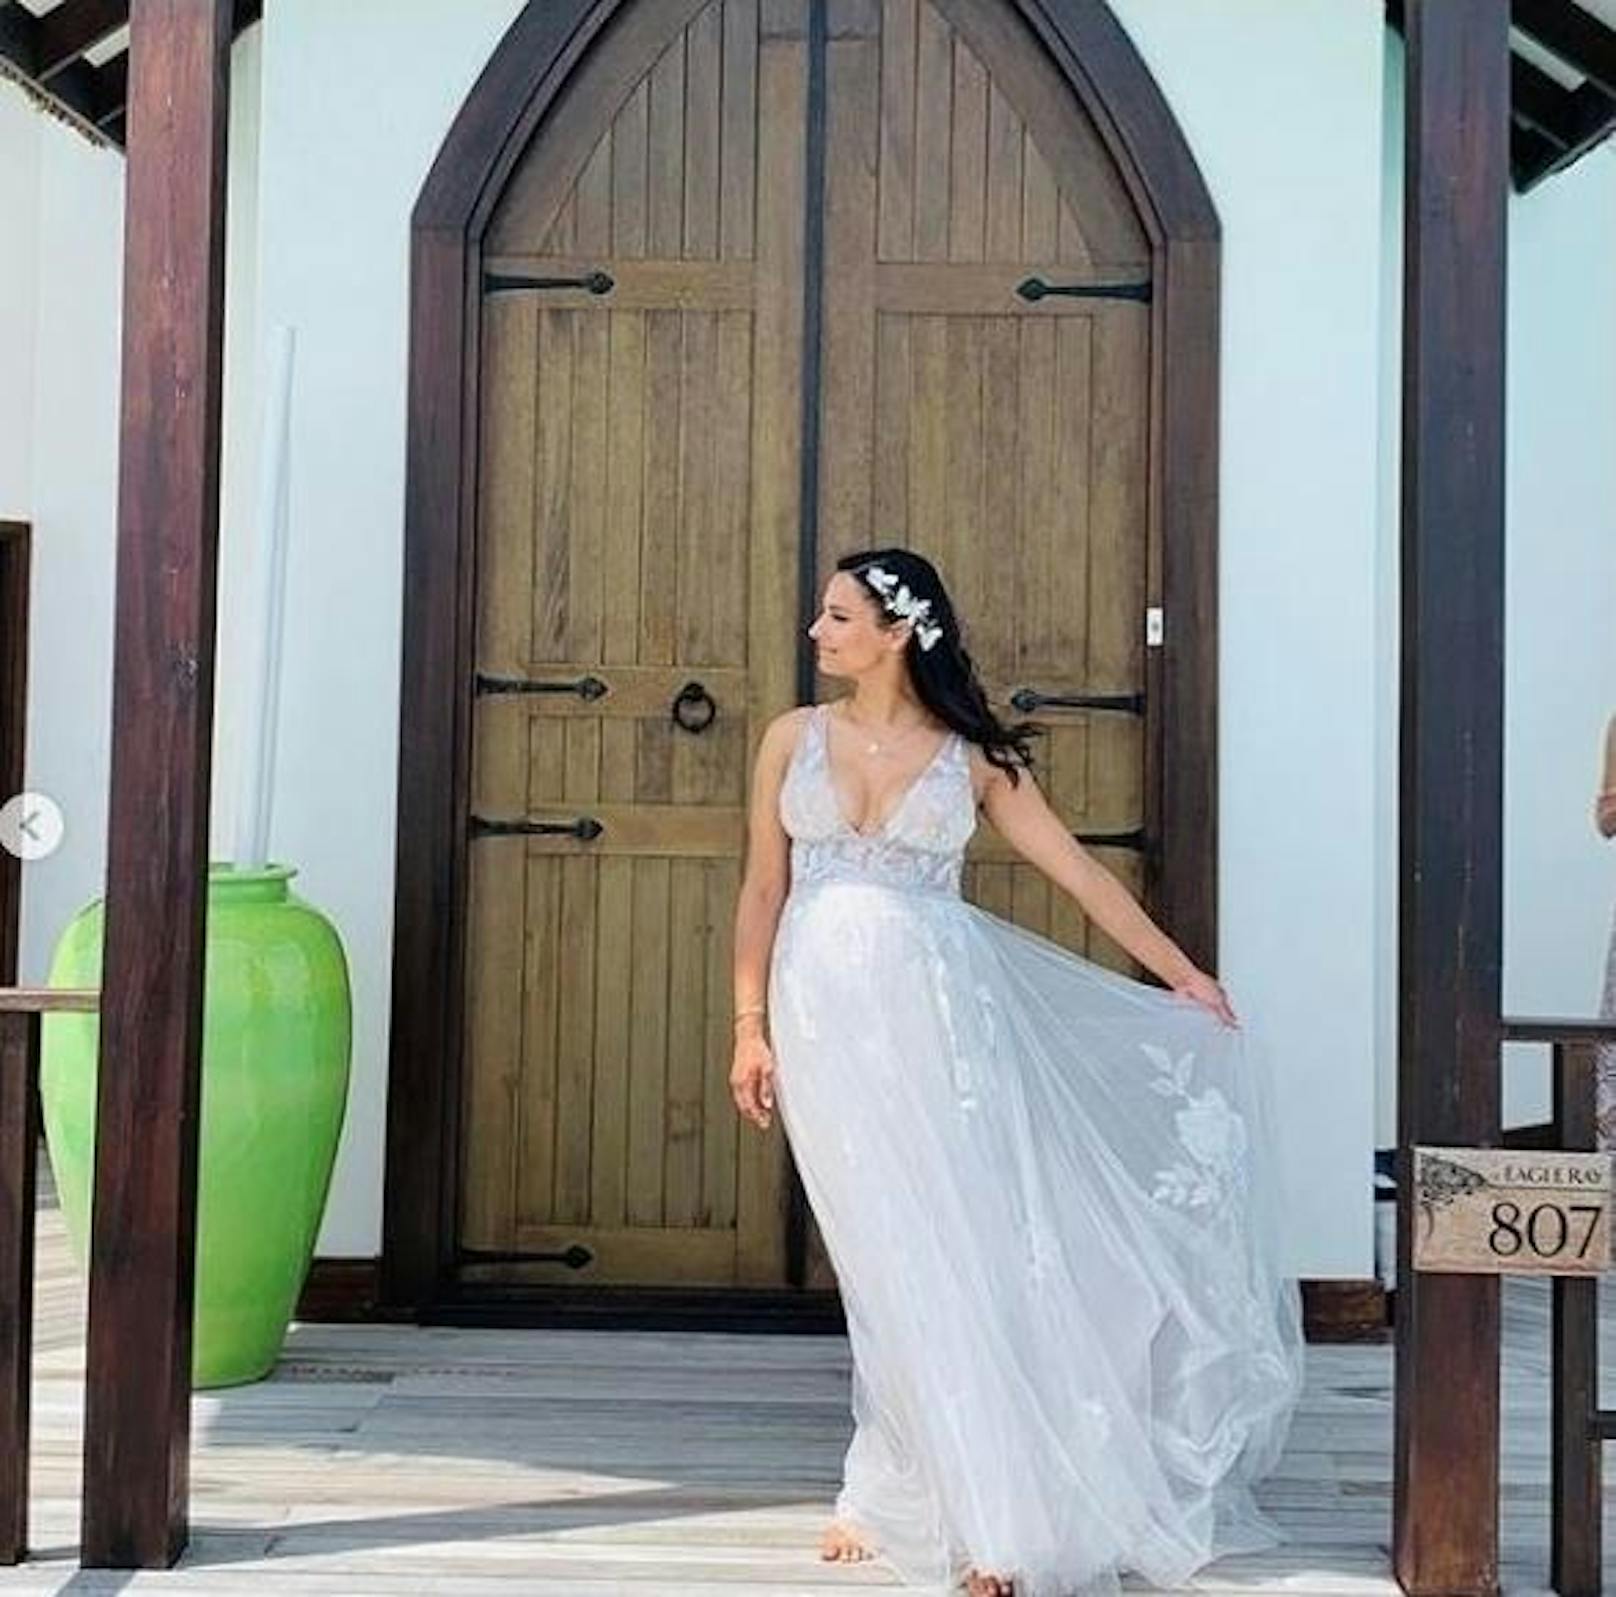 20.10.2019: Oliver Pocher und Amira Aly haben sich am Wochenende auf den Malediven abseits der Öffentlichkeit das Ja-Wort gegeben. Die Braut zeigte sich auf Instagram in einem wunderschönen Kleid.